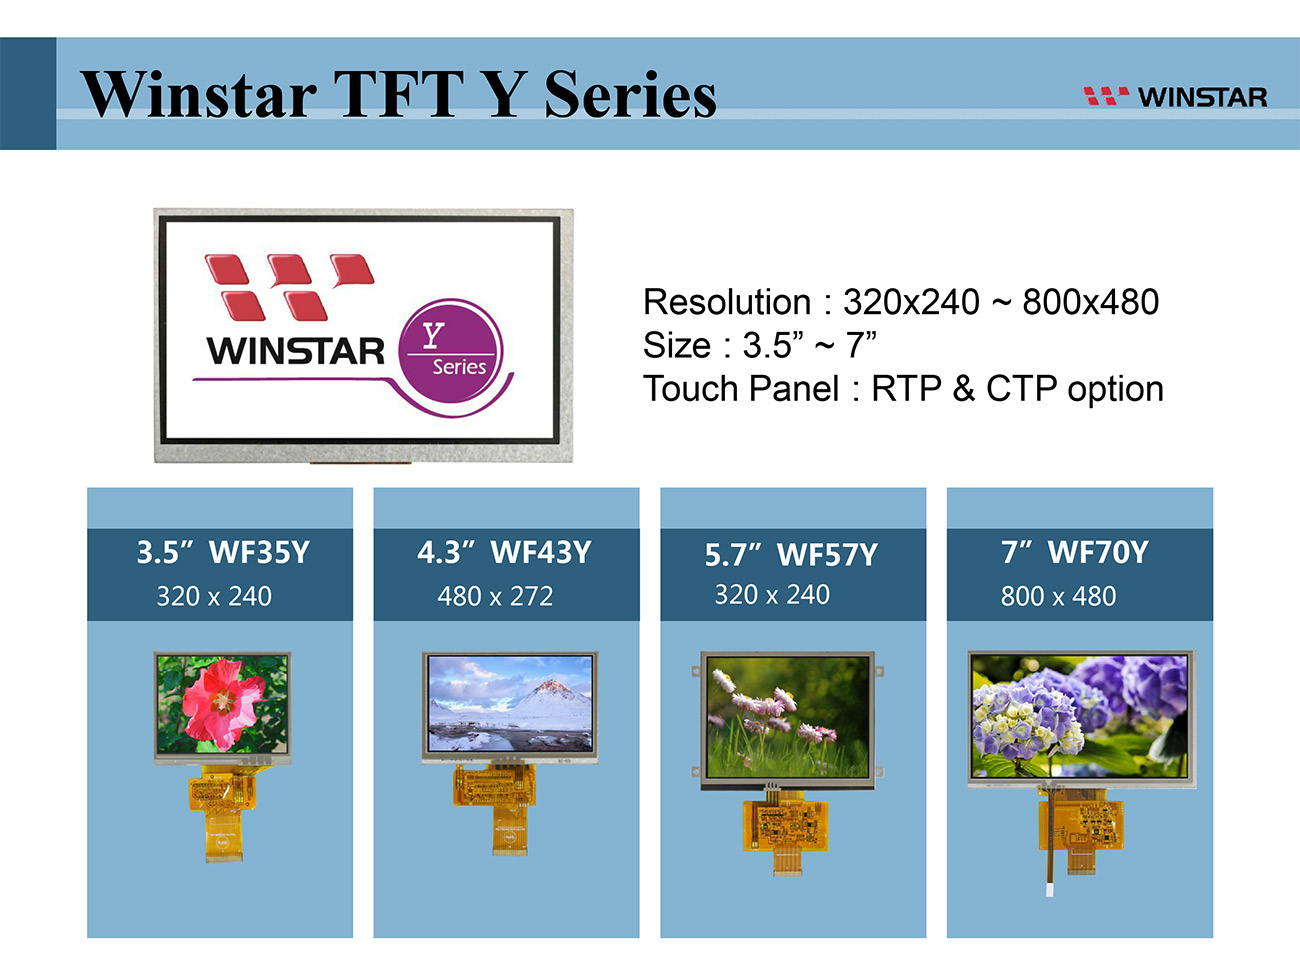 Winstar TFT-LCD – Y-Serie - 3.5 tft lcd, 3.5" tft lcd, tft lcd 3.5, tft lcd 3.5", 3.5 tft display, tft display 3.5, 4.3 tft lcd, 4.3 tft lcd, 4.3" tft lcd, tft lcd 4.3, tft lcd 4.3", 4.3 tft display, tft display 4.3, 5.7 tft lcd, 5.7" tft lcd, tft lcd 5.7, tft lcd 5.7", 5.7 tft display, tft display 5.7, 7 tft lcd, 7" tft lcd, tft lcd 7, tft lcd 7", 7 tft display, tft display 7, 7.0 tft lcd, 7.0 tft display